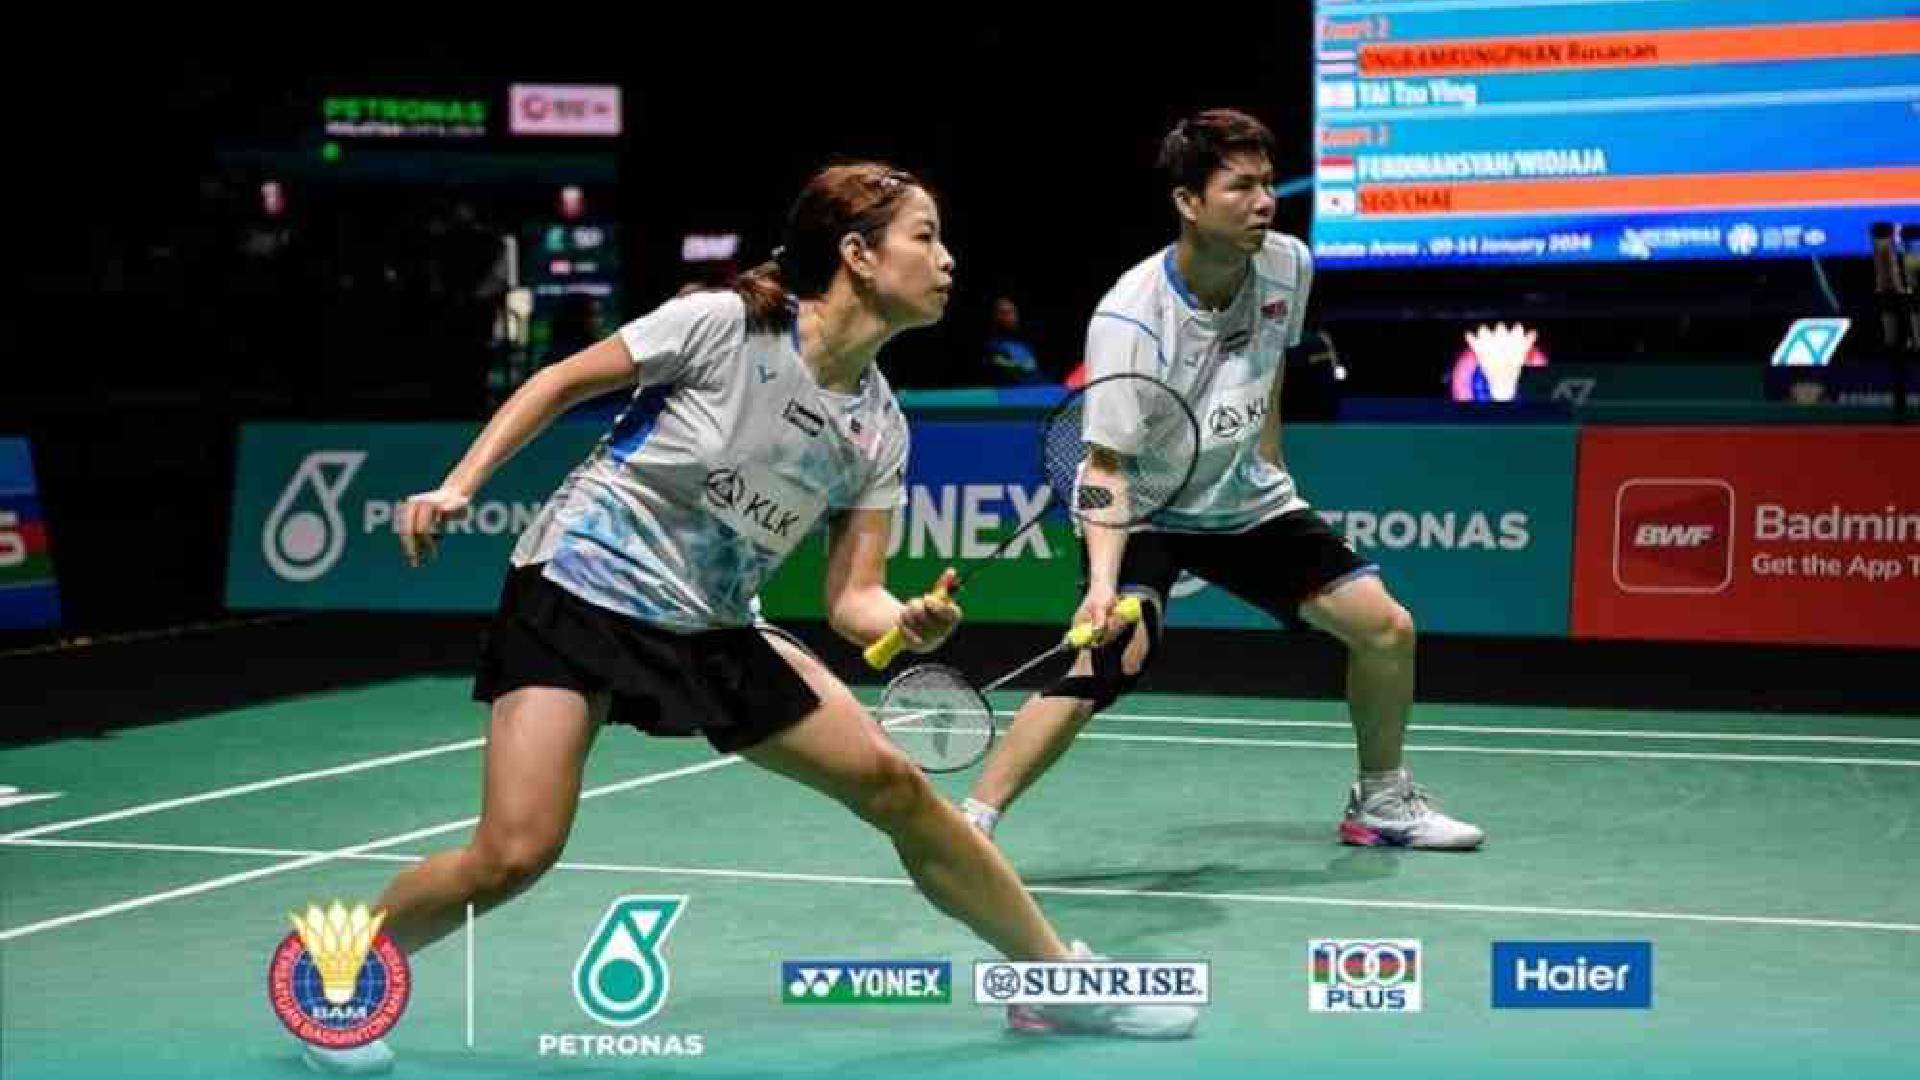 Swiss Open: Goh Soon Huat & Shevon Lai Muncul Juara, Tewaskan Chen Tang Jie & Toh Ee Wei